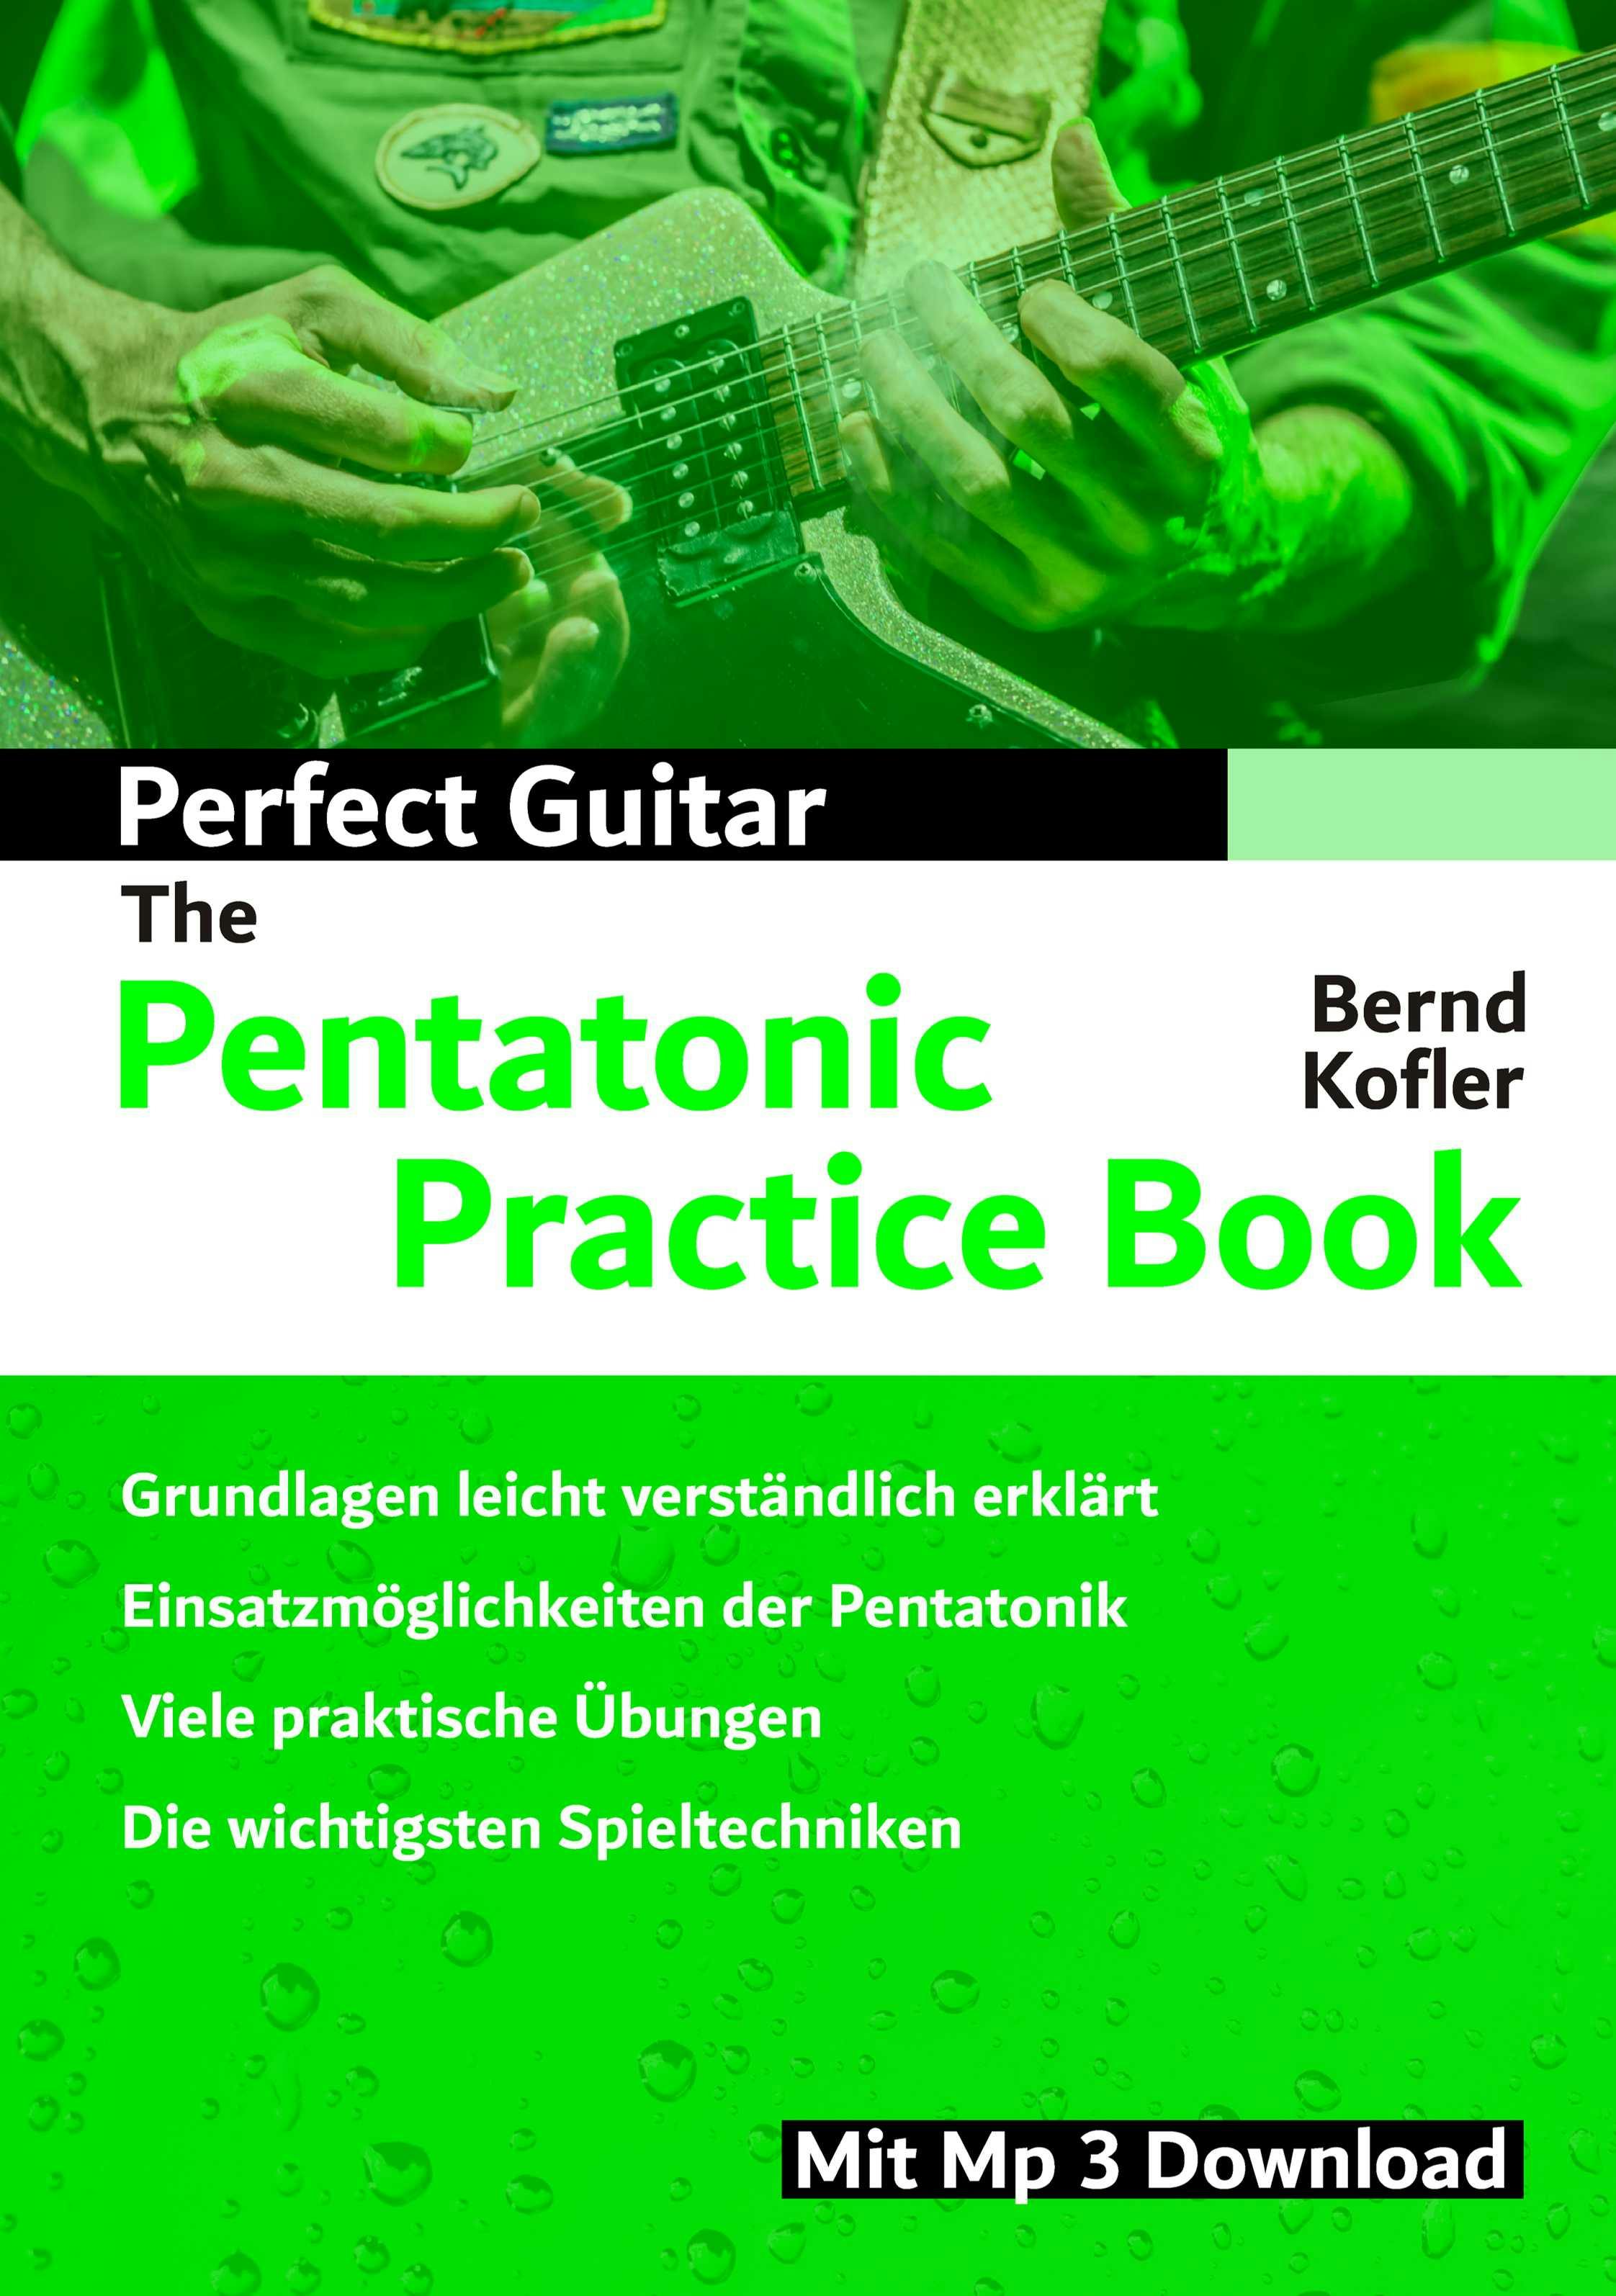 Perfect Guitar - The Pentatonic Practice Book - Bernd Kofler